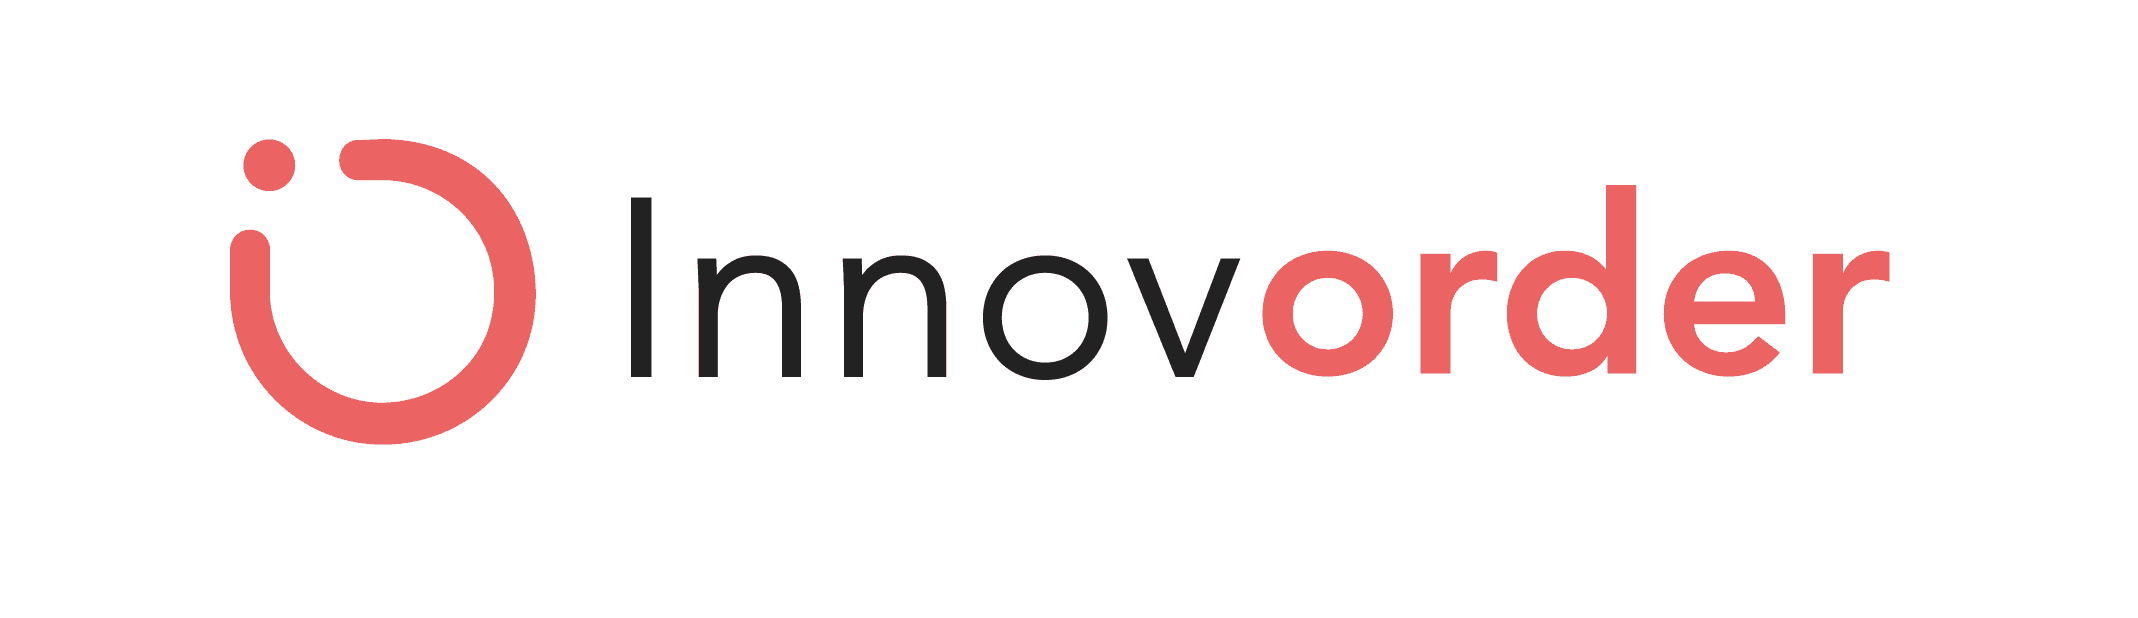 innovorder-logo